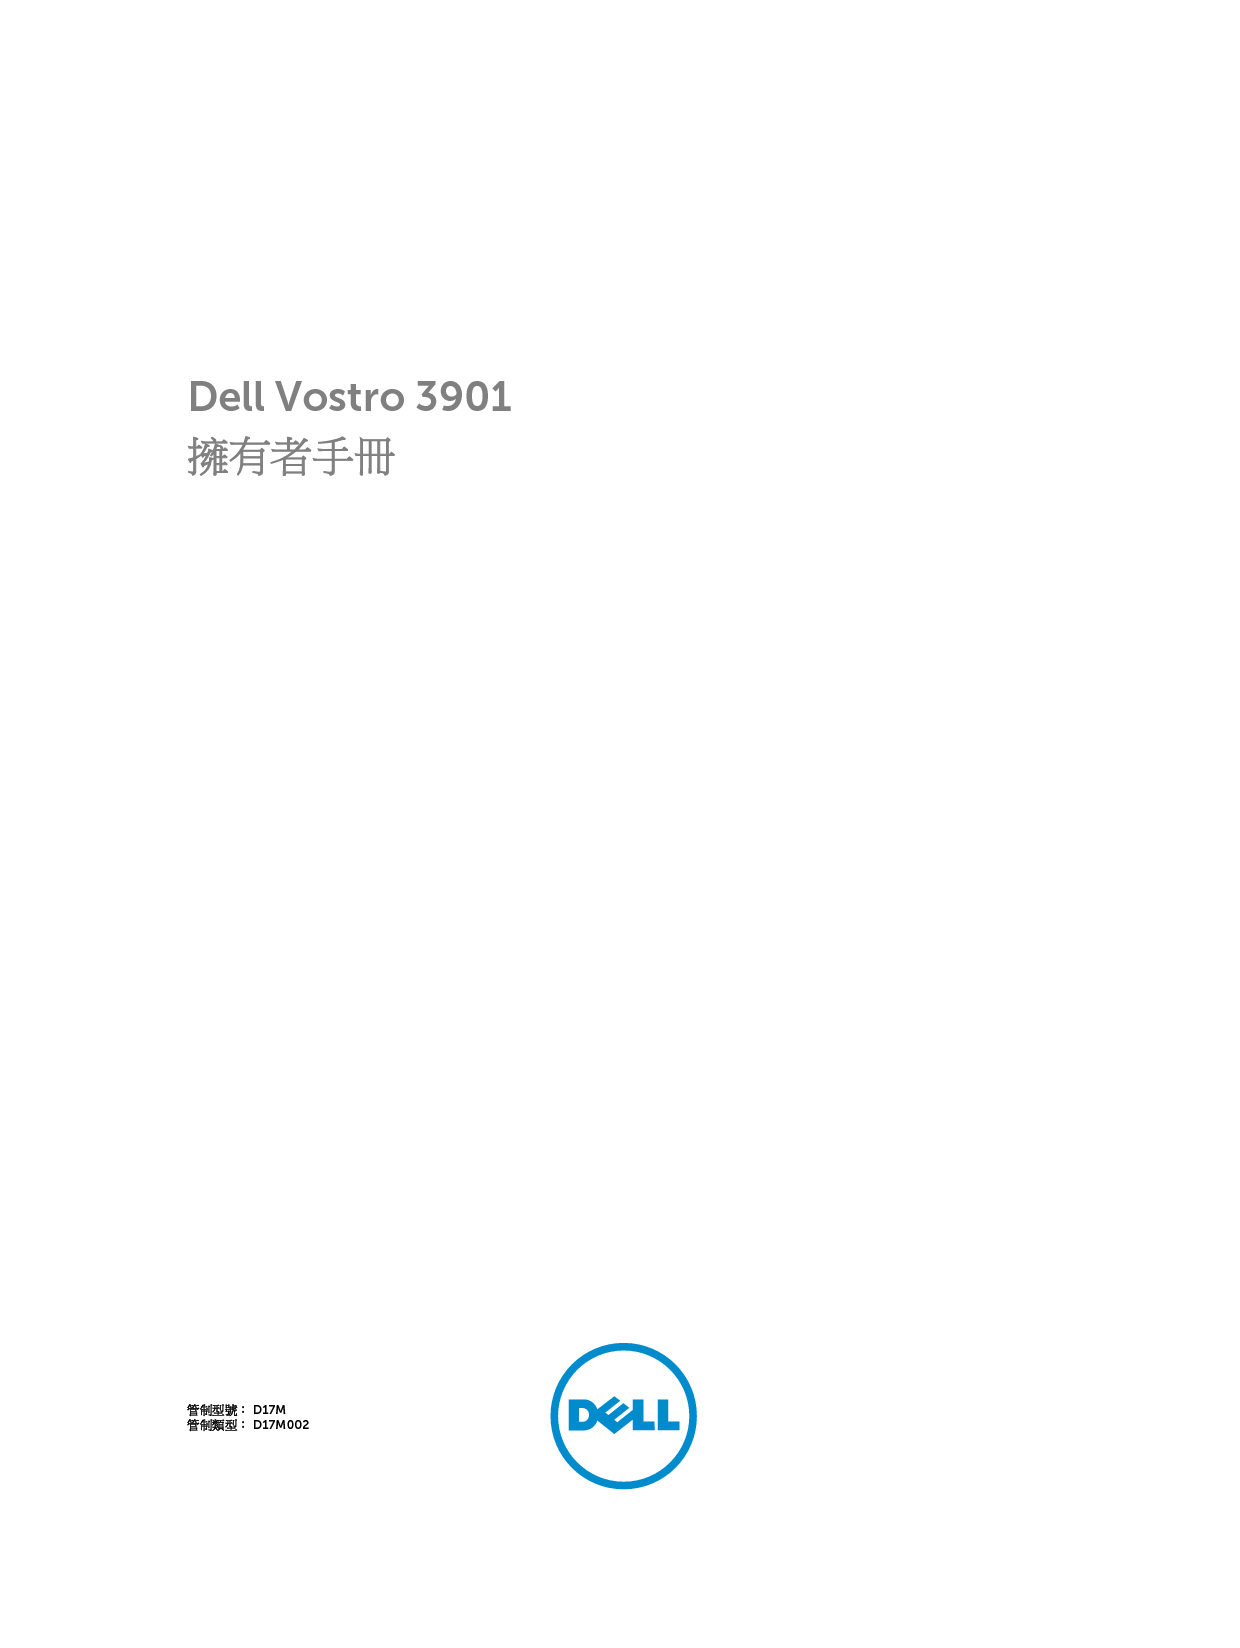 戴尔 Dell Vostro 3901 繁体 用户手册 封面